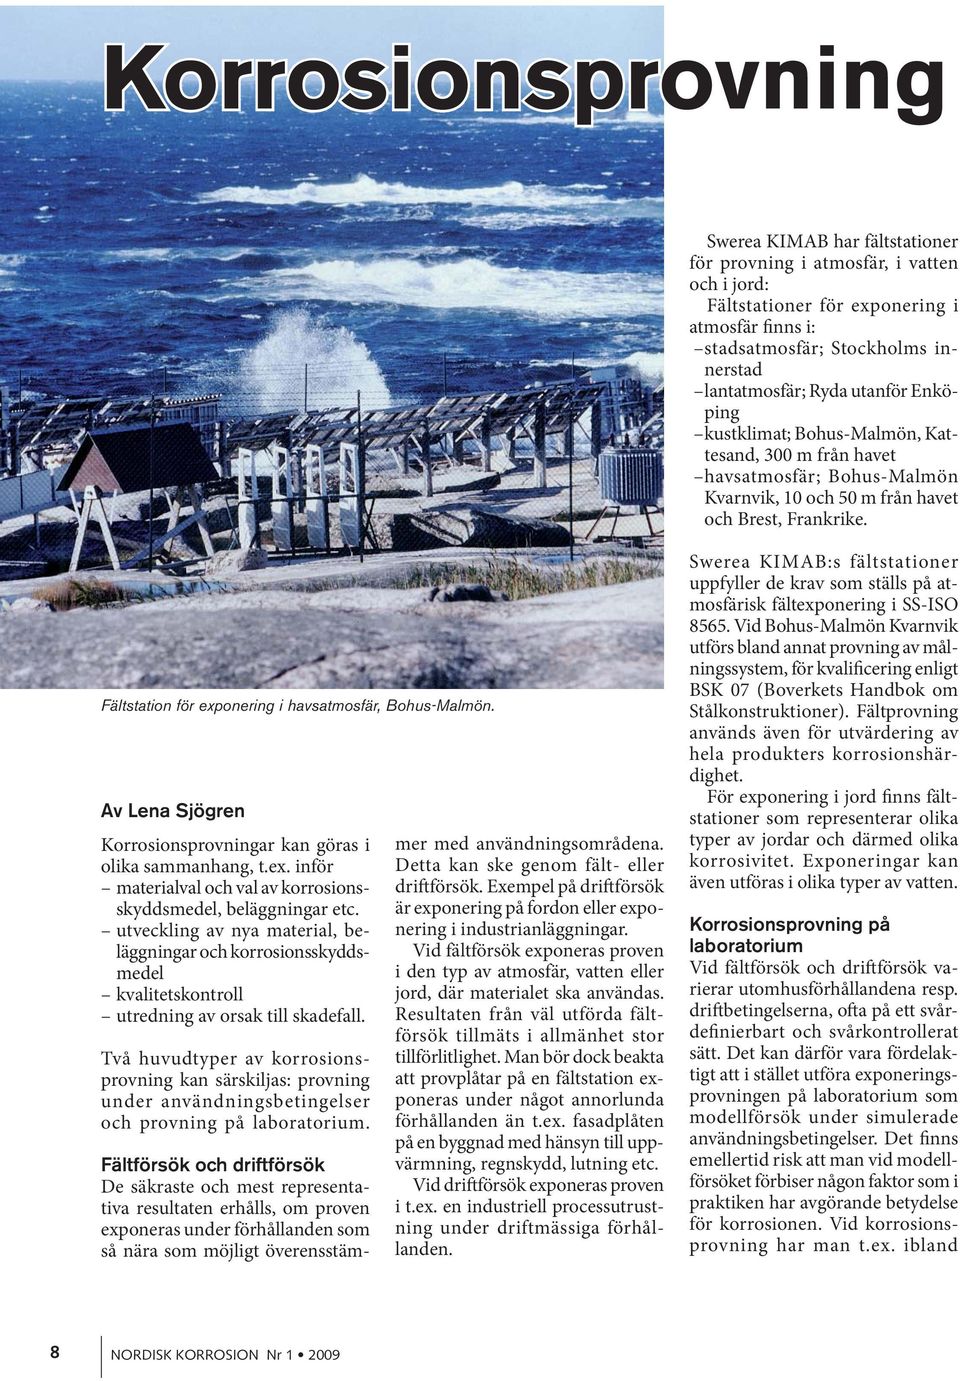 Fältstation för exponering i havsatmosfär, Bohus-Malmön. Av Lena Sjögren Korrosionsprovningar kan göras i olika sammanhang, t.ex. inför materialval och val av korrosionsskyddsmedel, beläggningar etc.